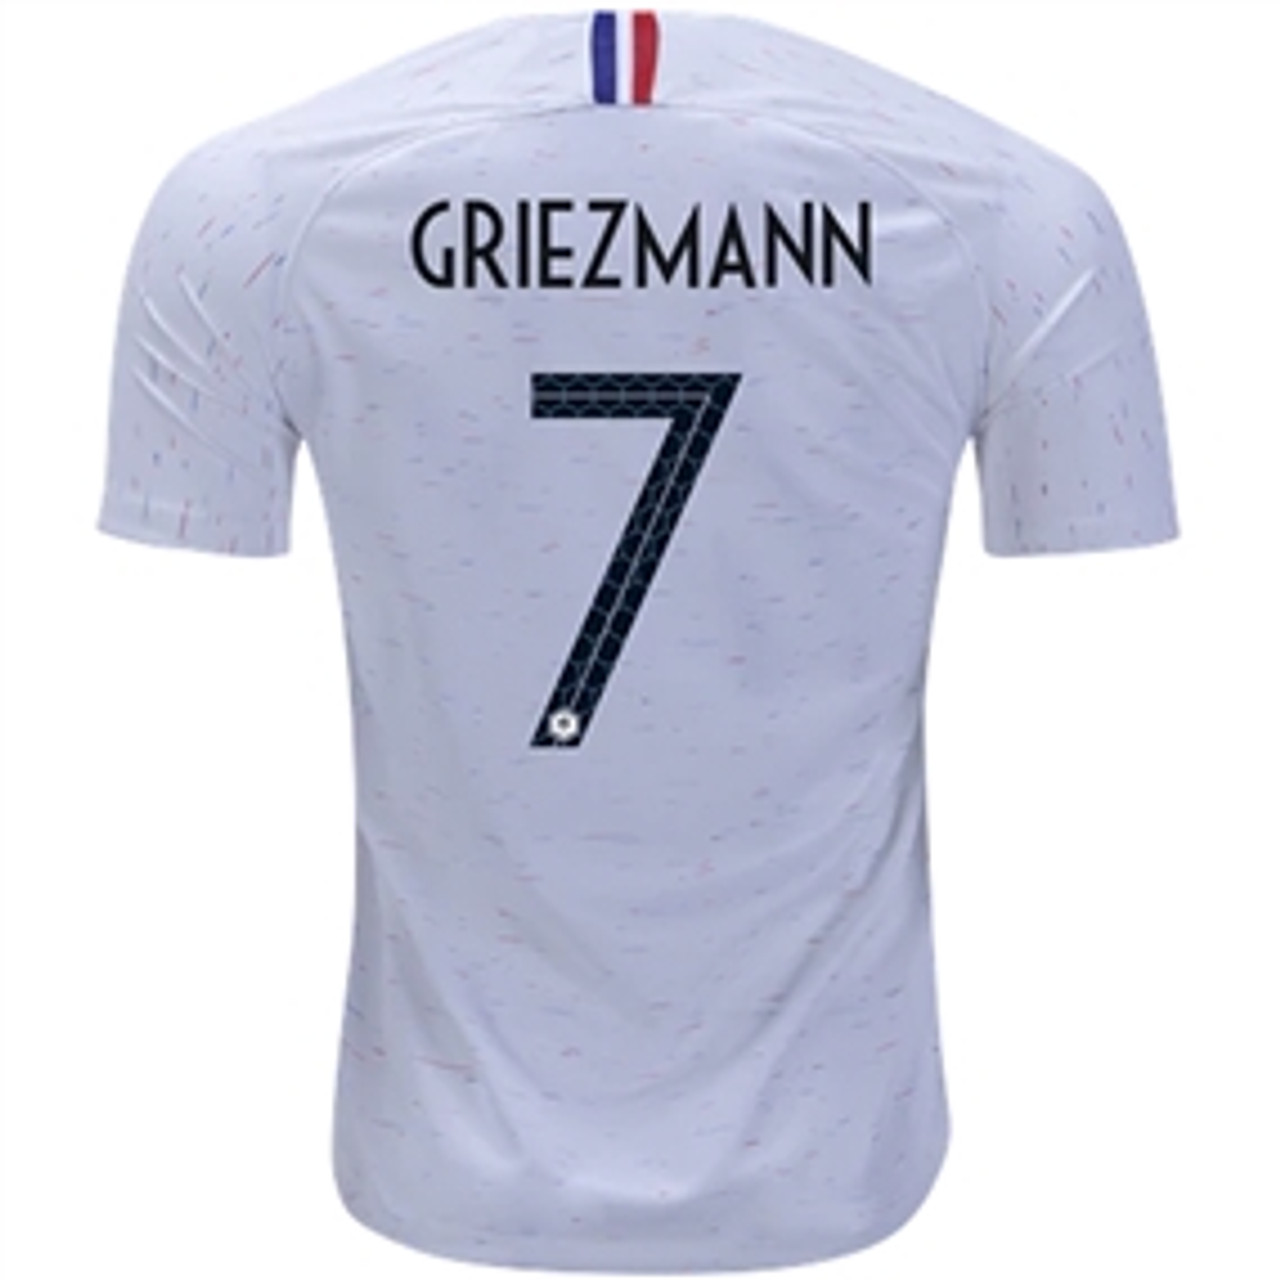 griezmann france jersey